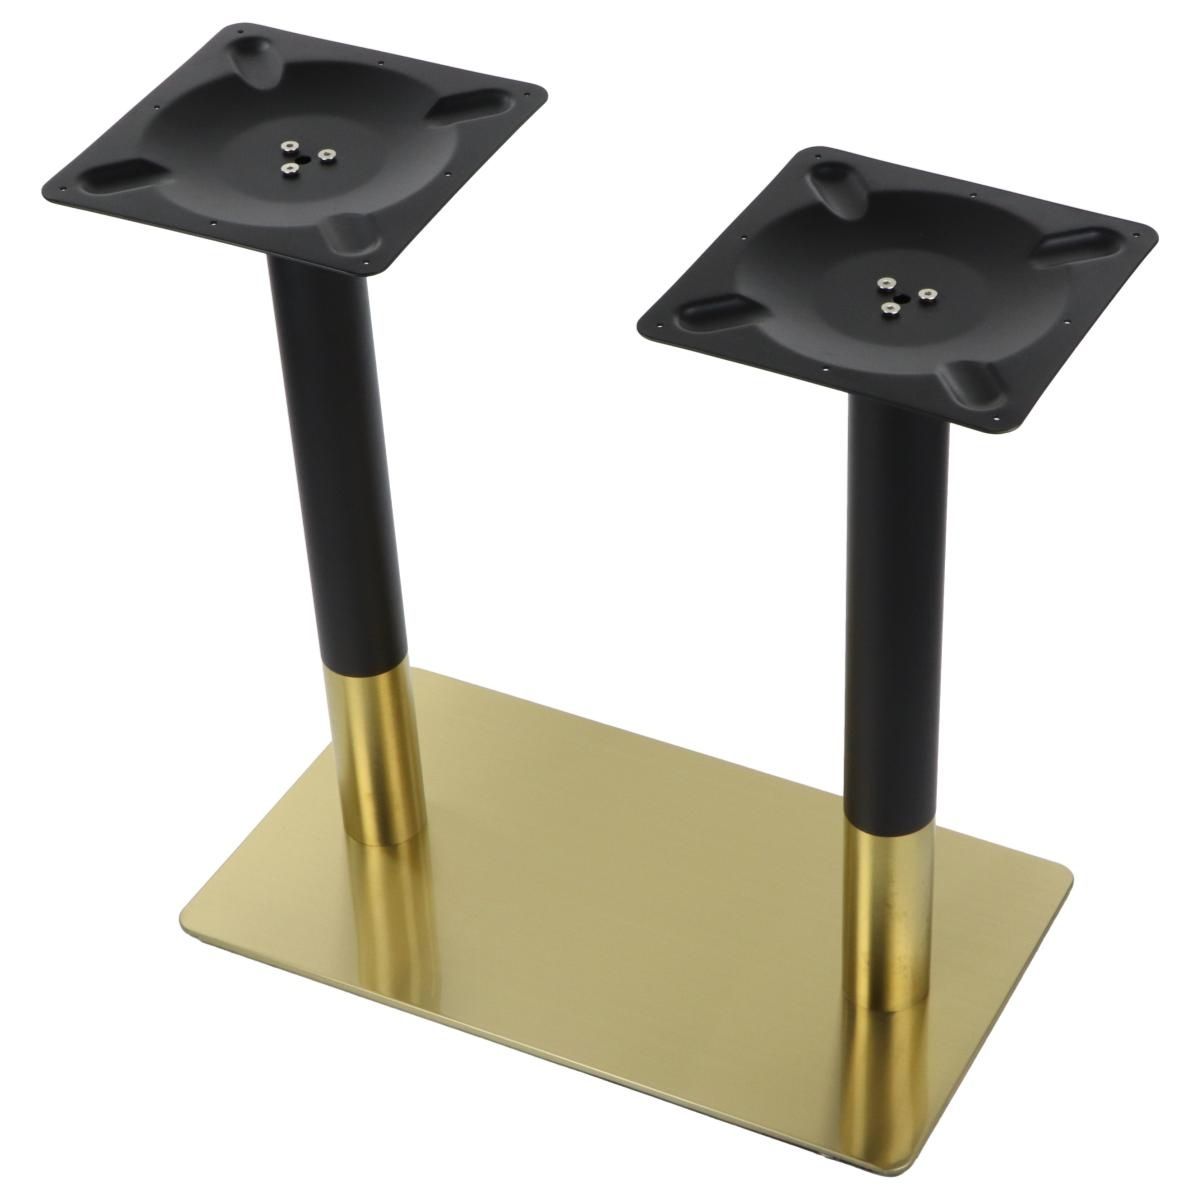 Elegancka podstawa do stolika wykonana ze stali nierdzewnej w kolorze złotym w połączeniu z elementami ze stali w kolorze czarnym.